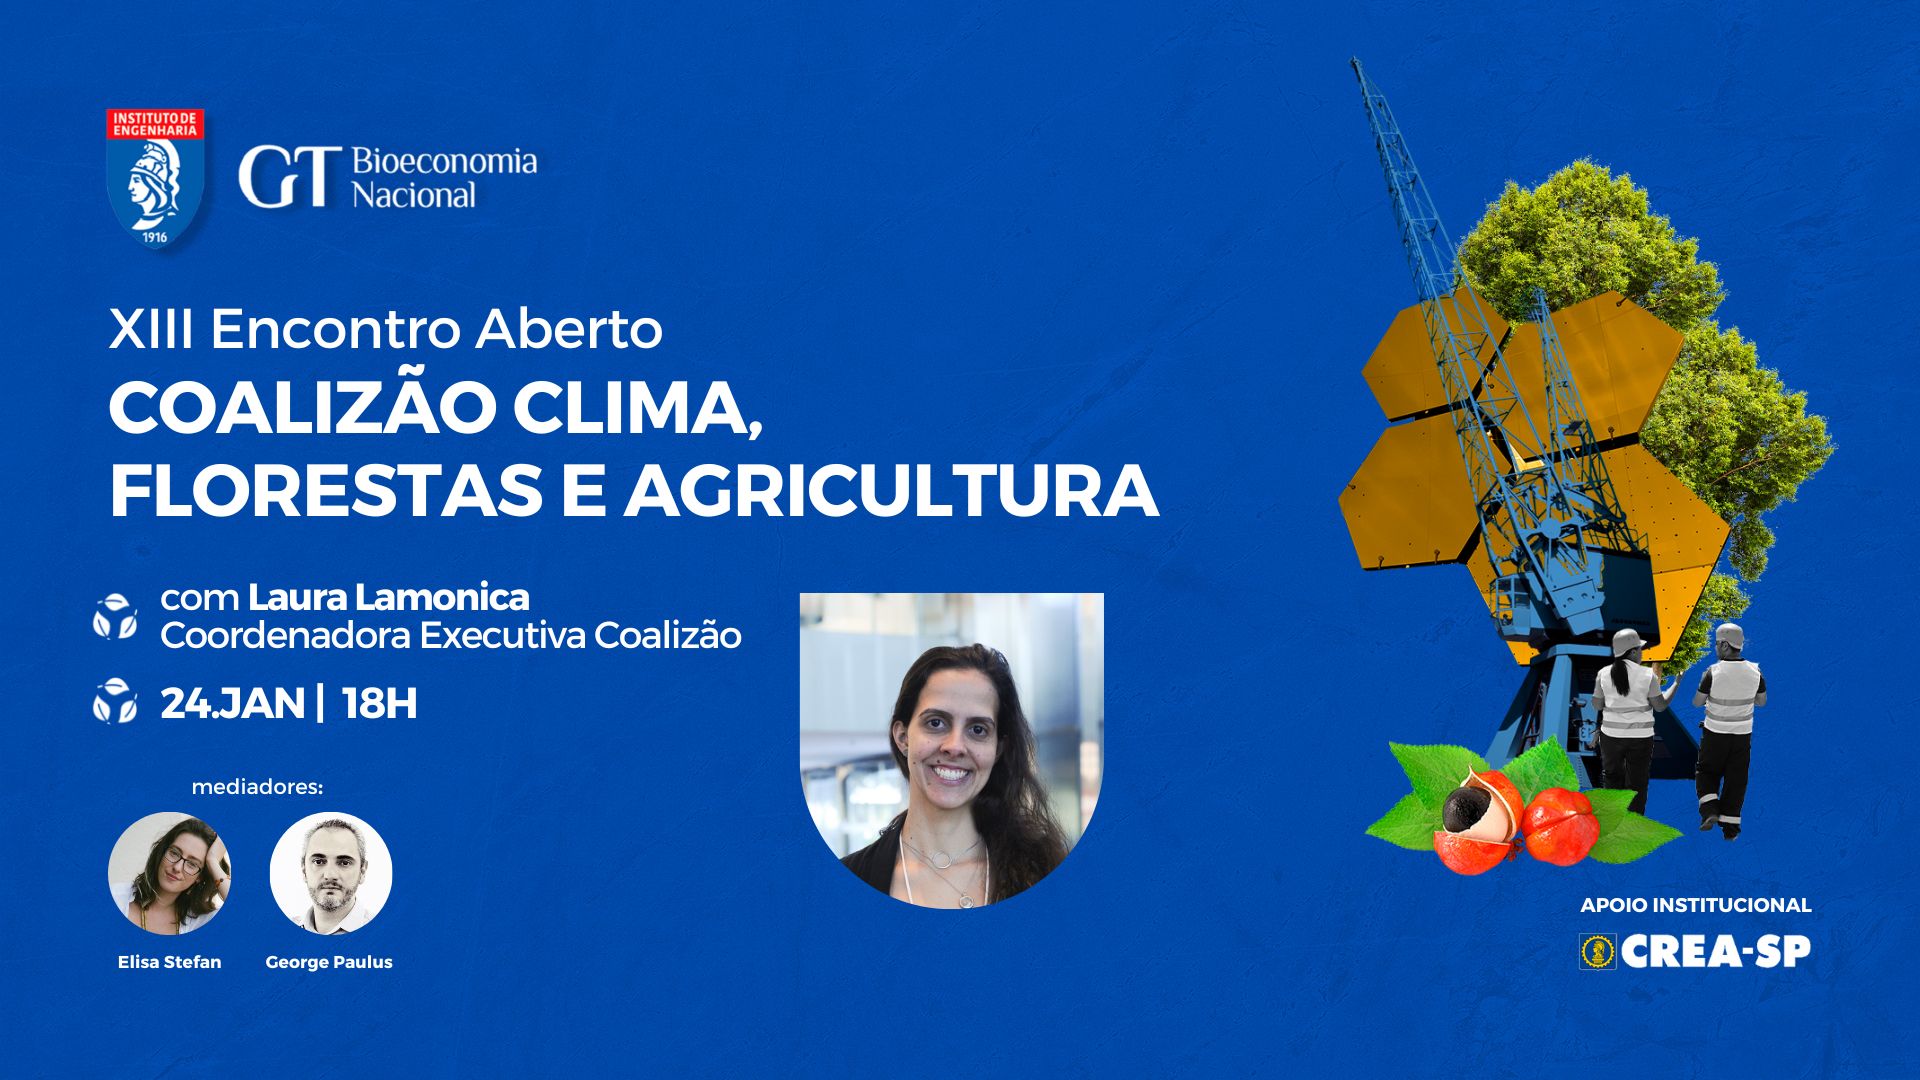 Debora Moreira - Professora universitária - Usjt- Sao bernardo